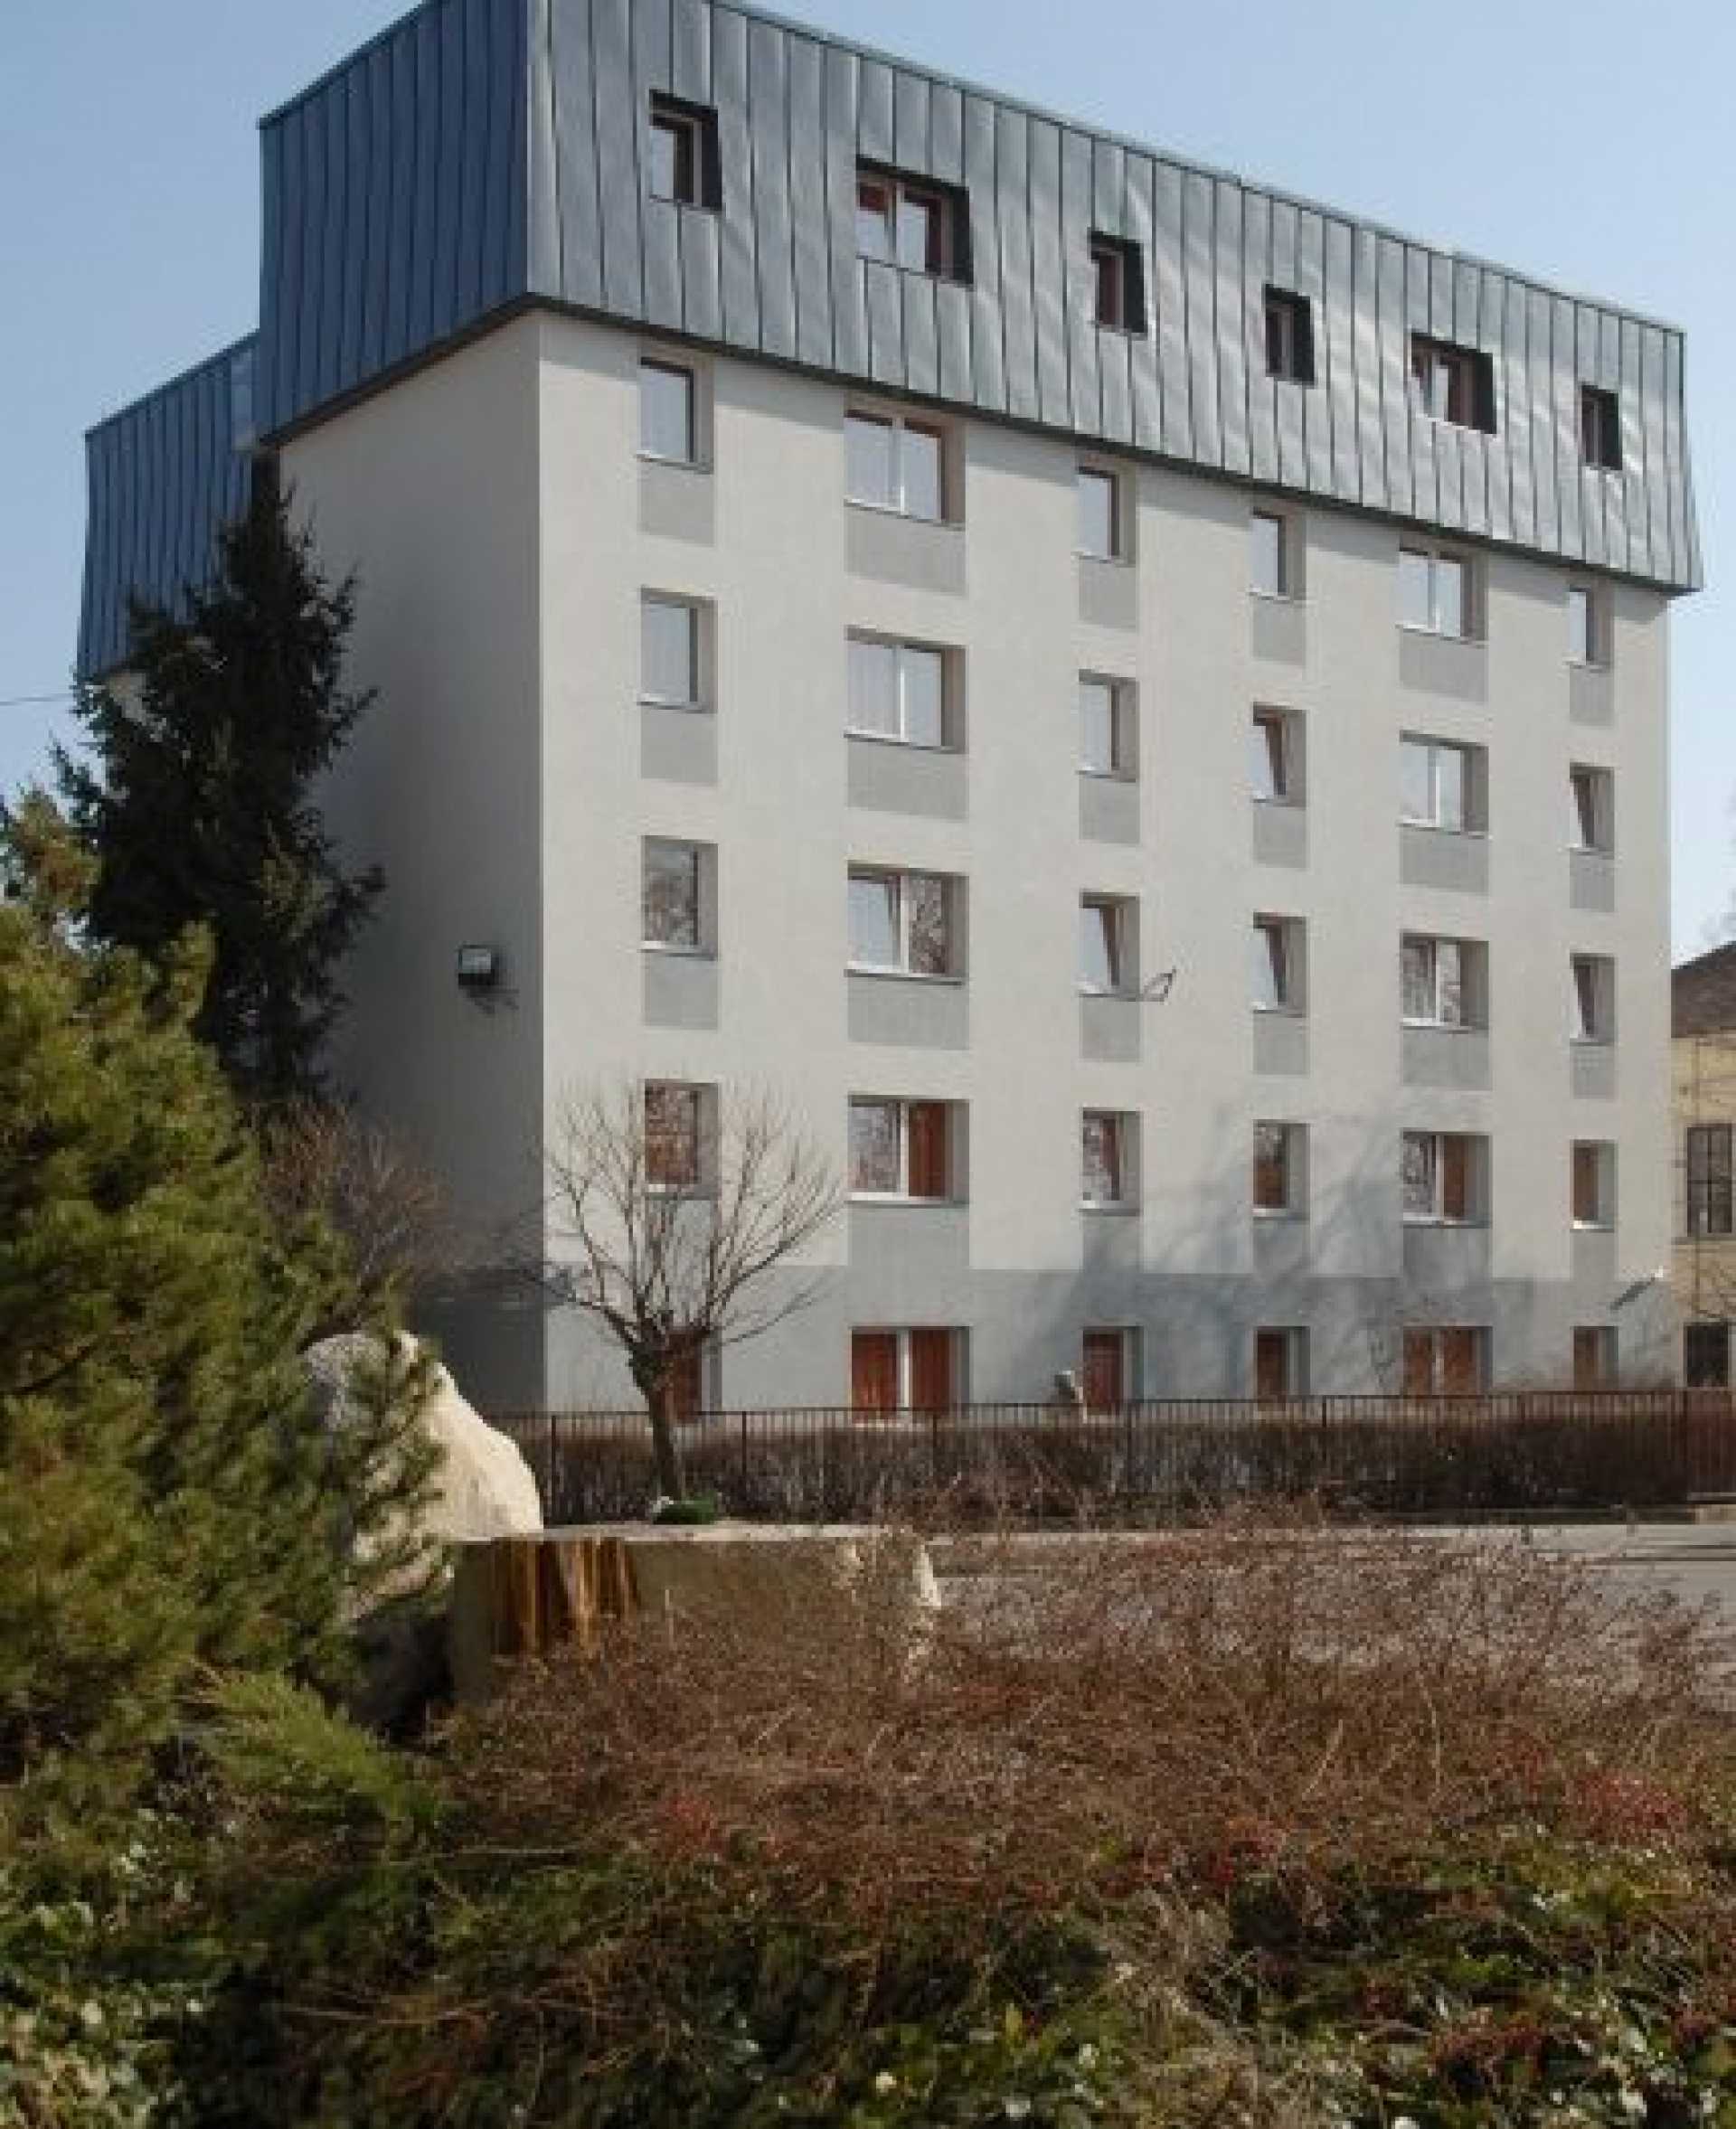 Gál Ferenc Egyetem Pedagógiai Kar Cervus Hostel “B” Kollégium